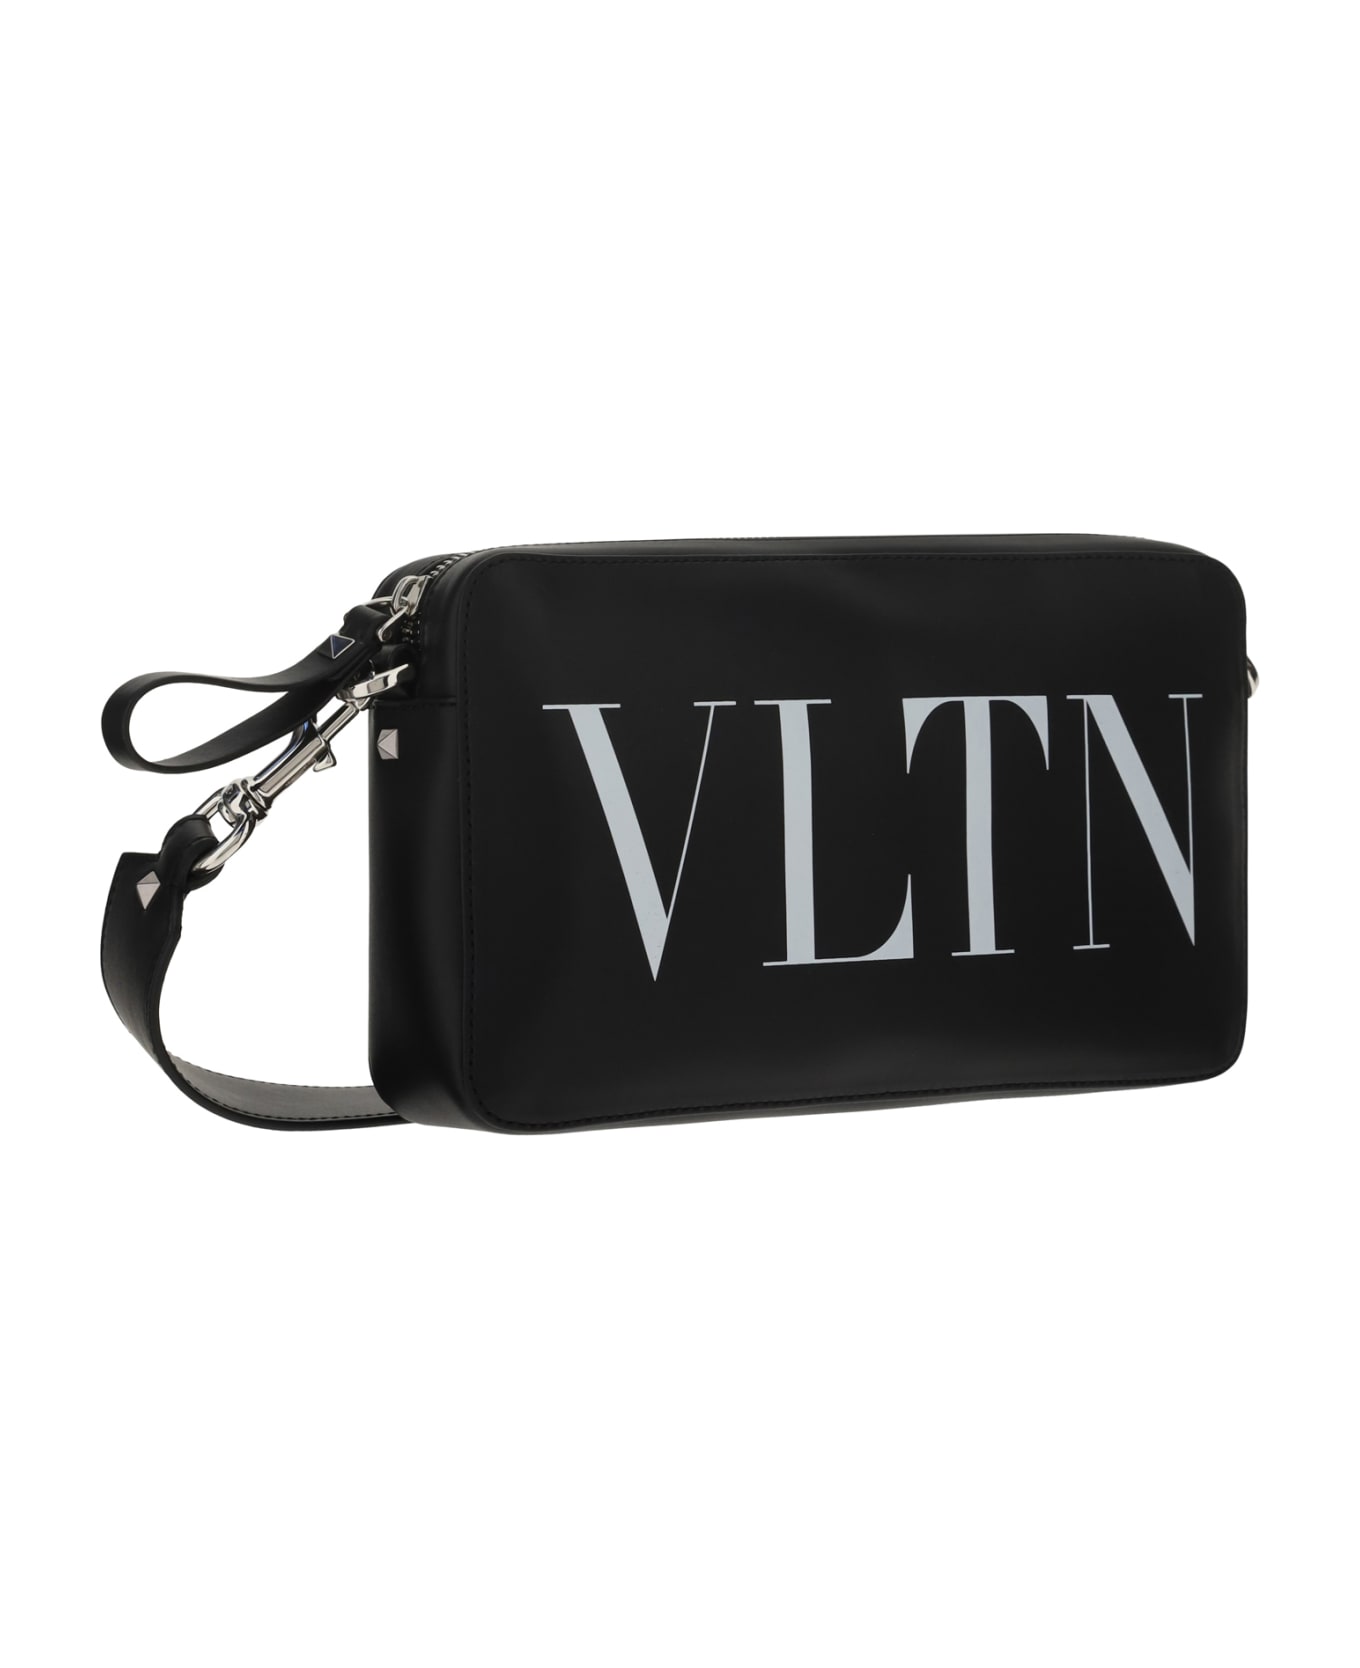 Valentino Garavani 'vltn' Shoulder Bag - Nero/bianco